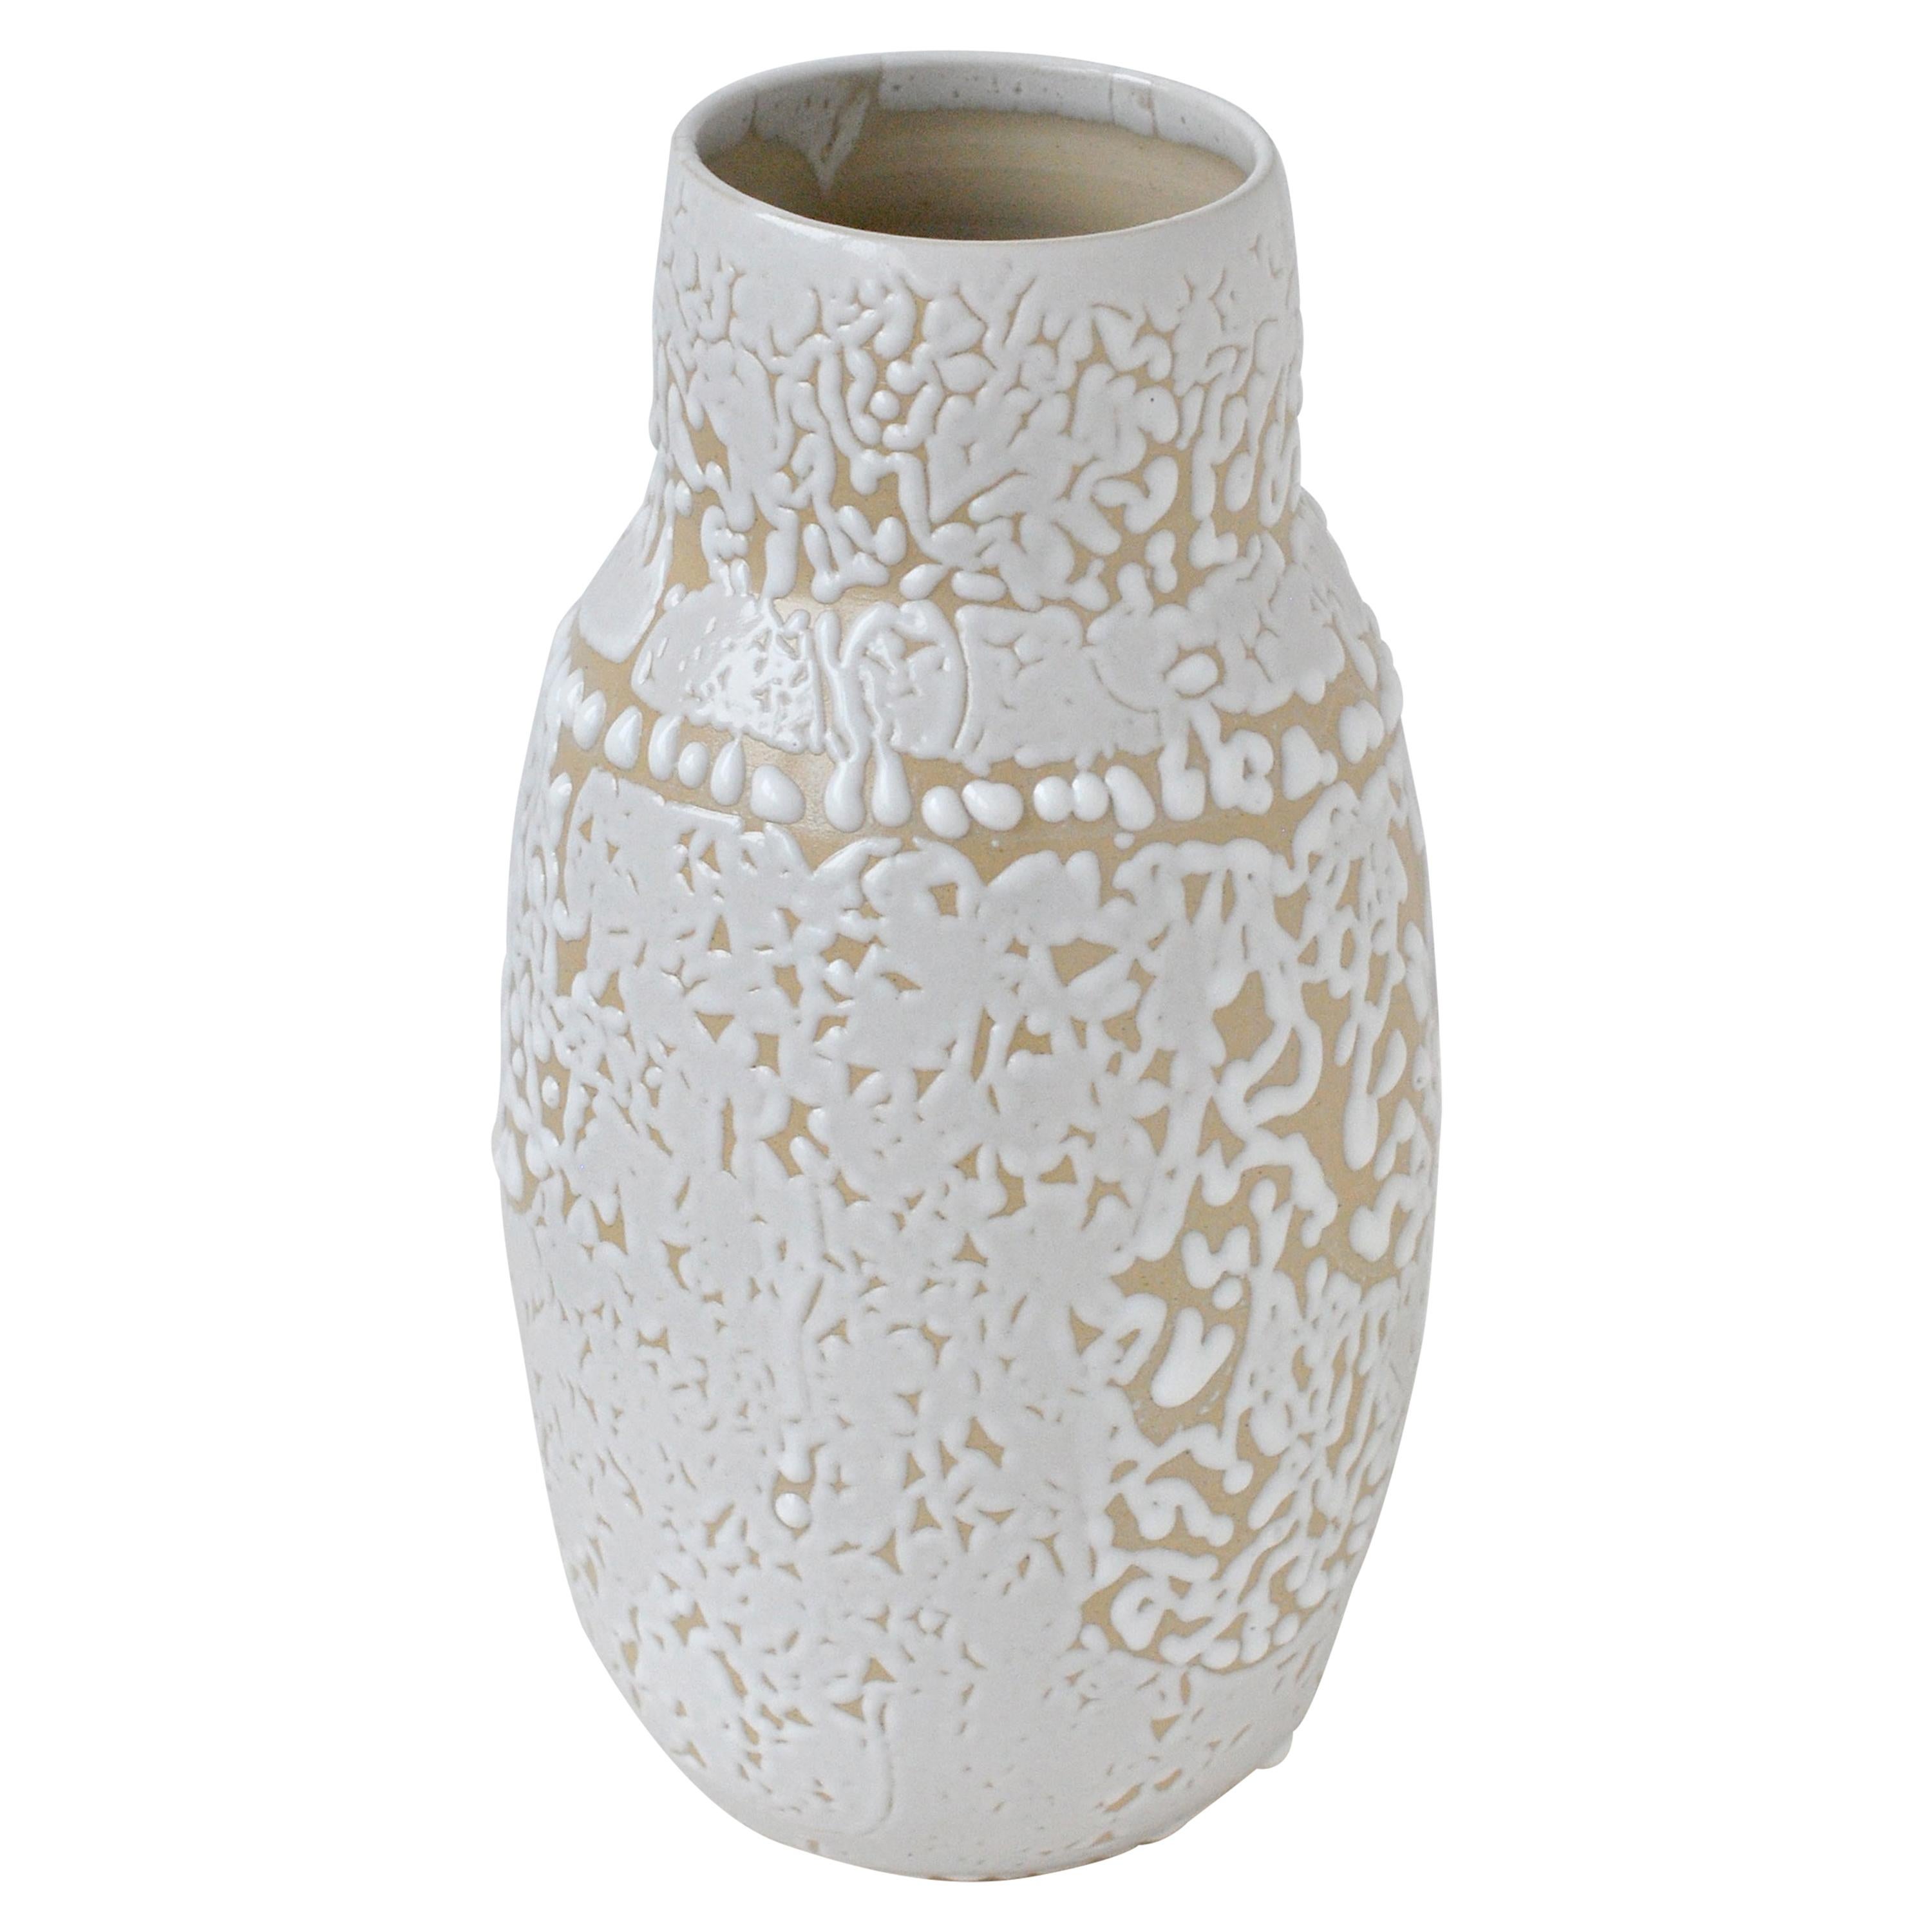 White Stoneware Vase by Moïo Studio